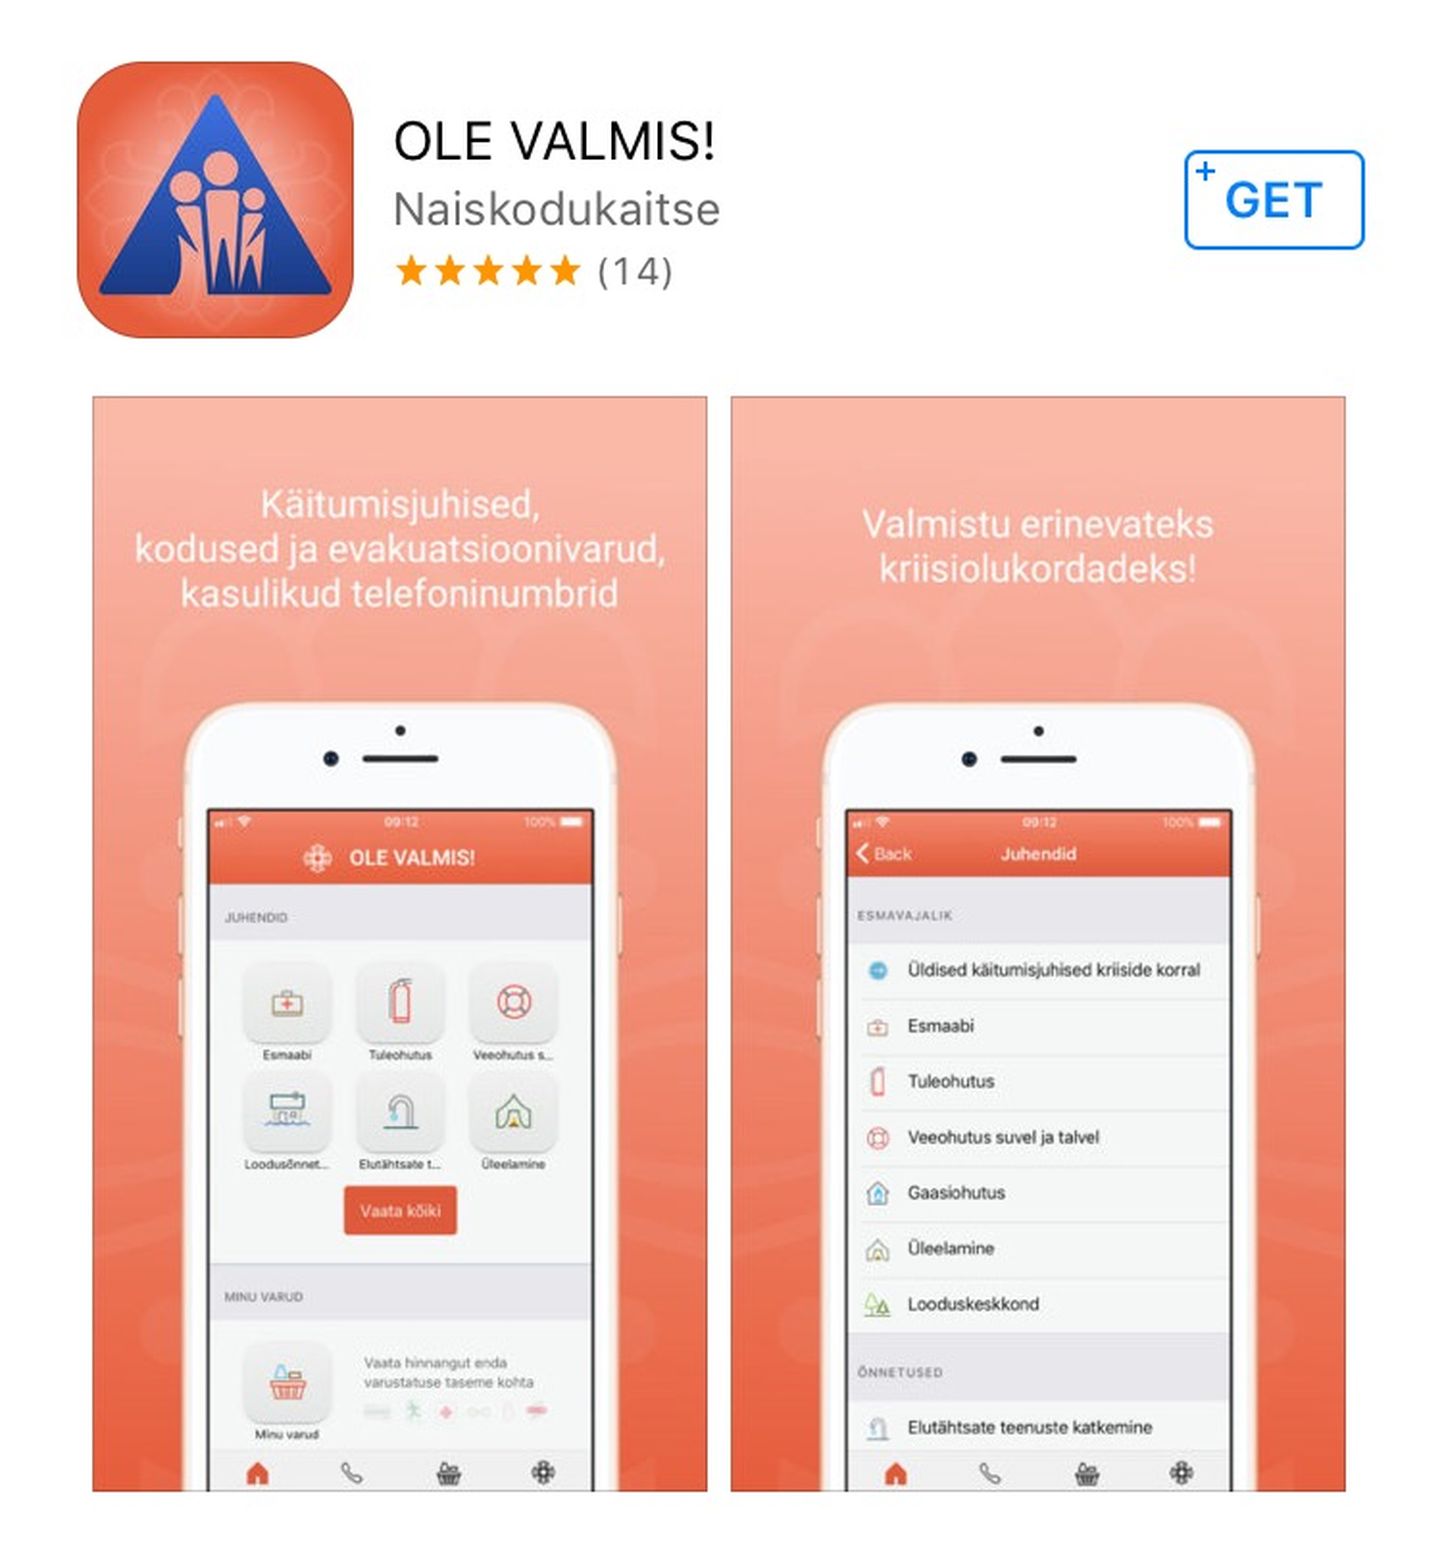 Скриншот мобильного приложения Ole valmis!.